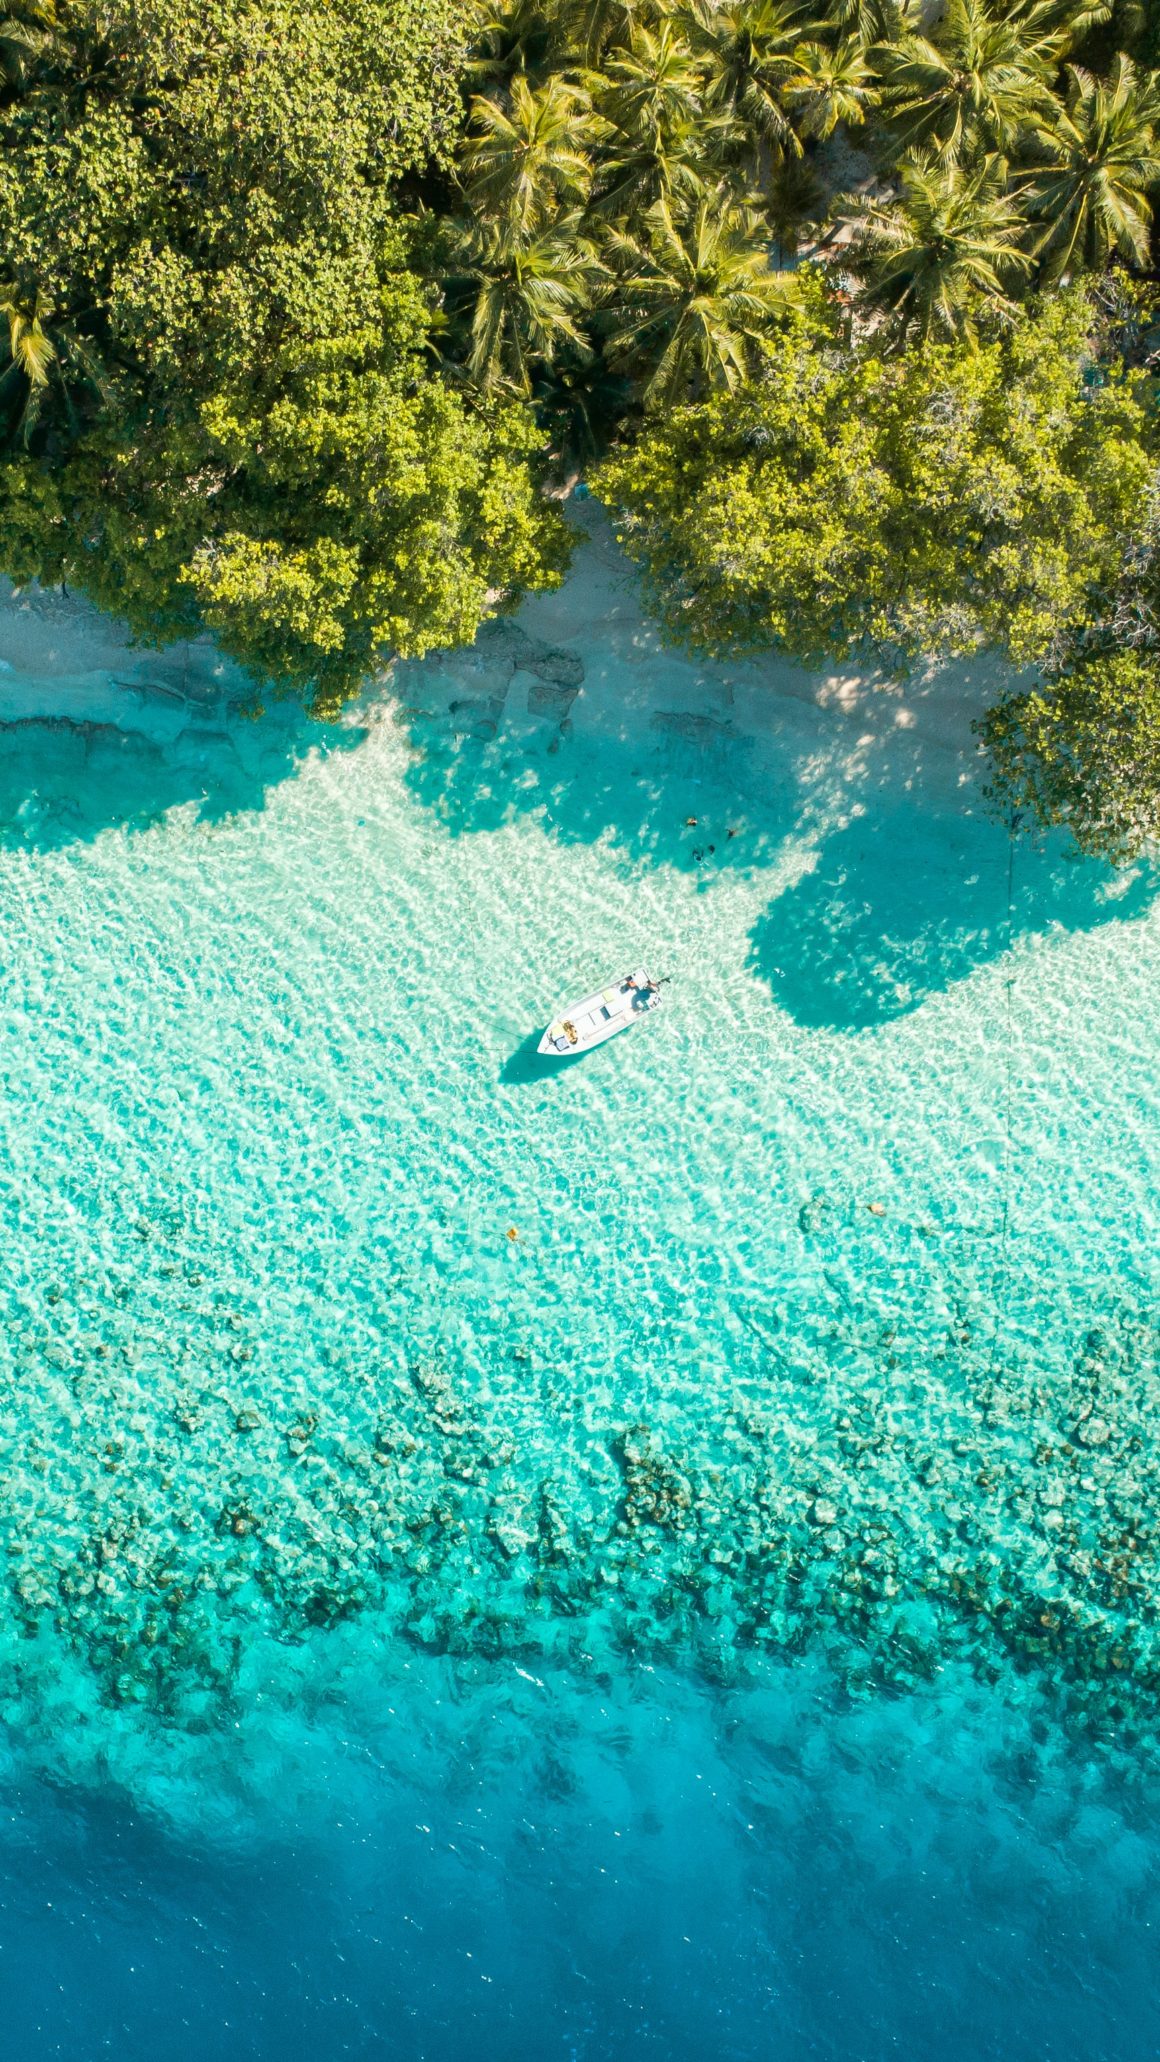 Nenhuma lista de ilhas paradisíacas estaria completa sem as Maldivas! Descubra quantas conseguir a bordo do seu próprio barco!